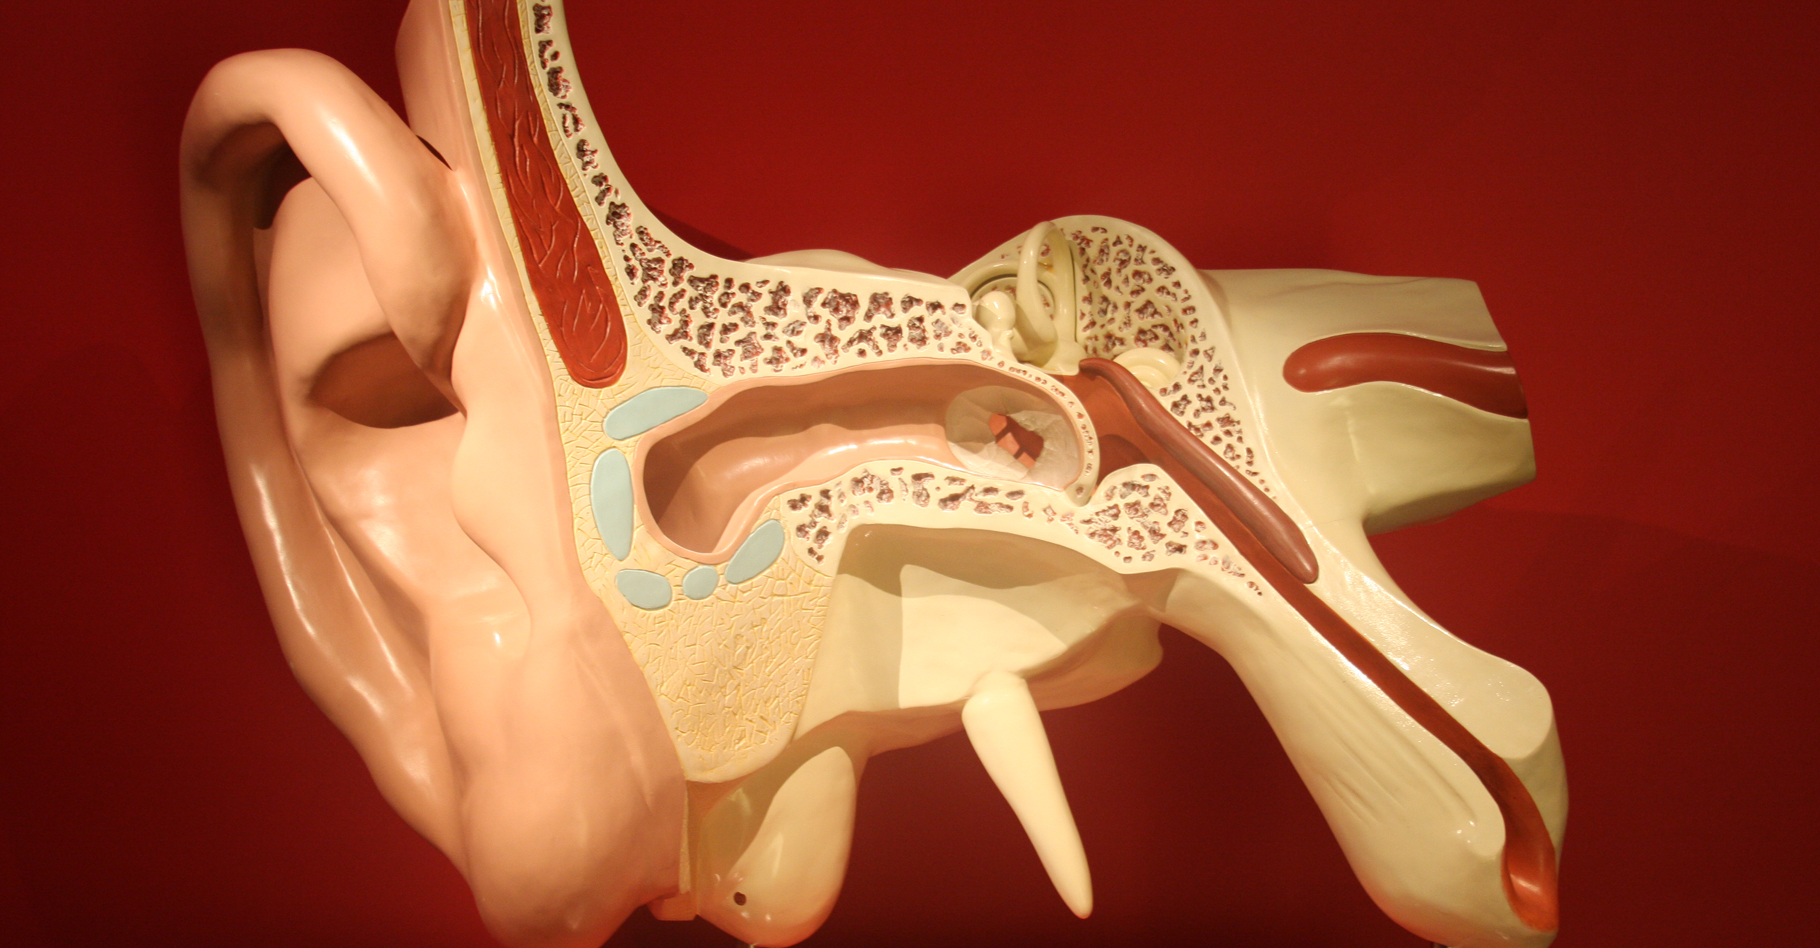 Anatomie d'une oreille humaine. © Bjoertvedt - CC BY-NC 3.0